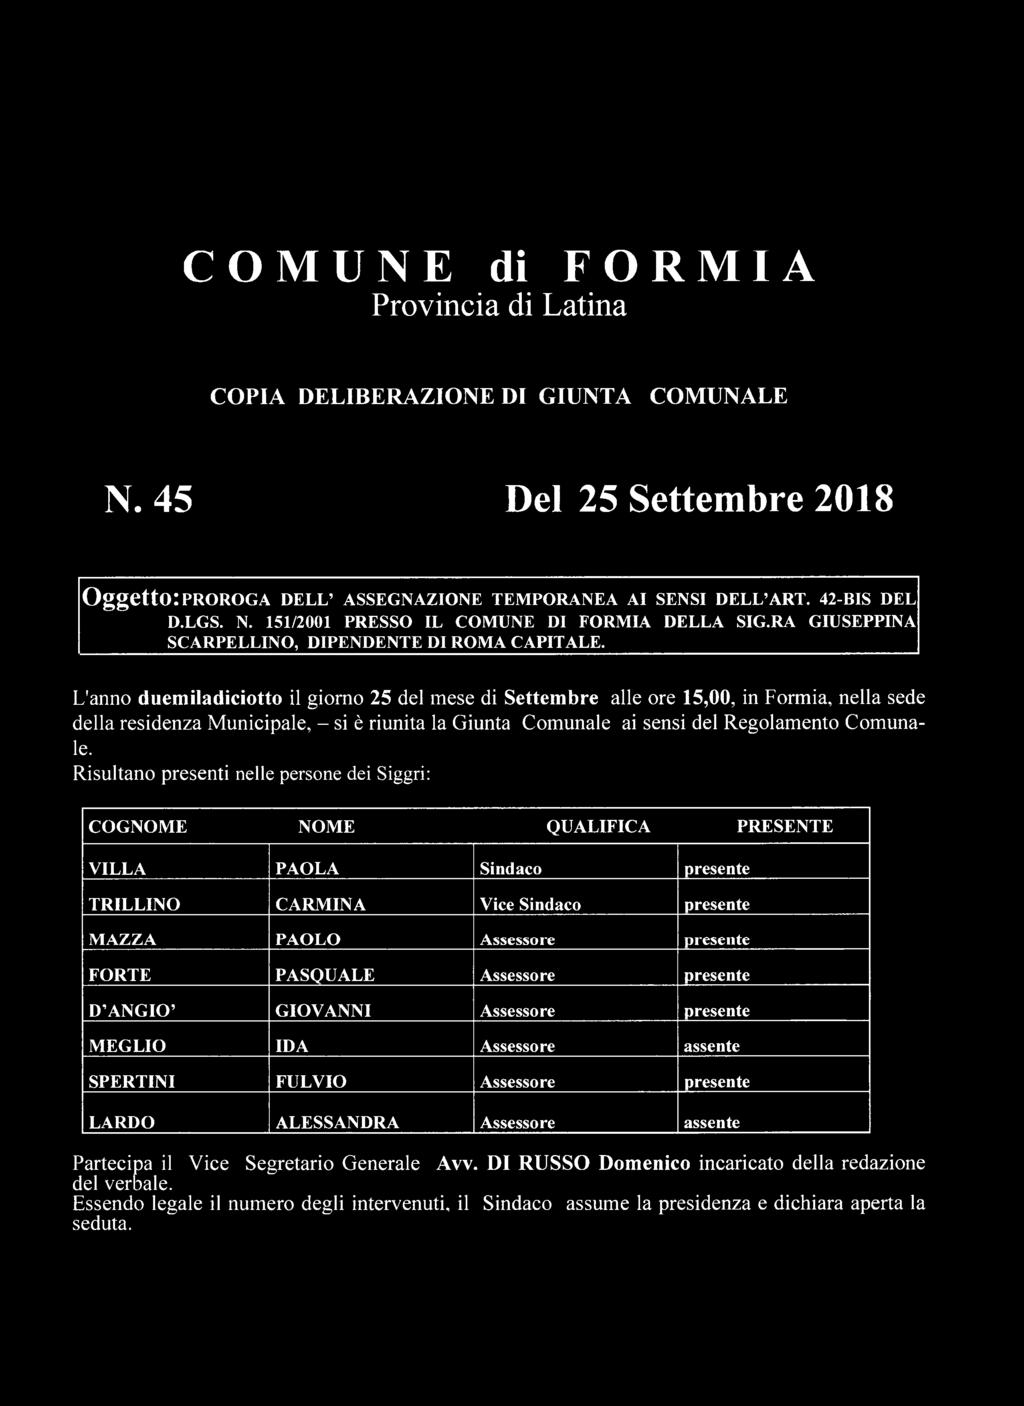 L'anno duemiladiciotto il giorno 25 del mese di Settembre alle ore 15,00, in Formia, nella sede della residenza Municipale, - si è riunita la Giunta Comunale ai sensi del Regolamento Comunale.